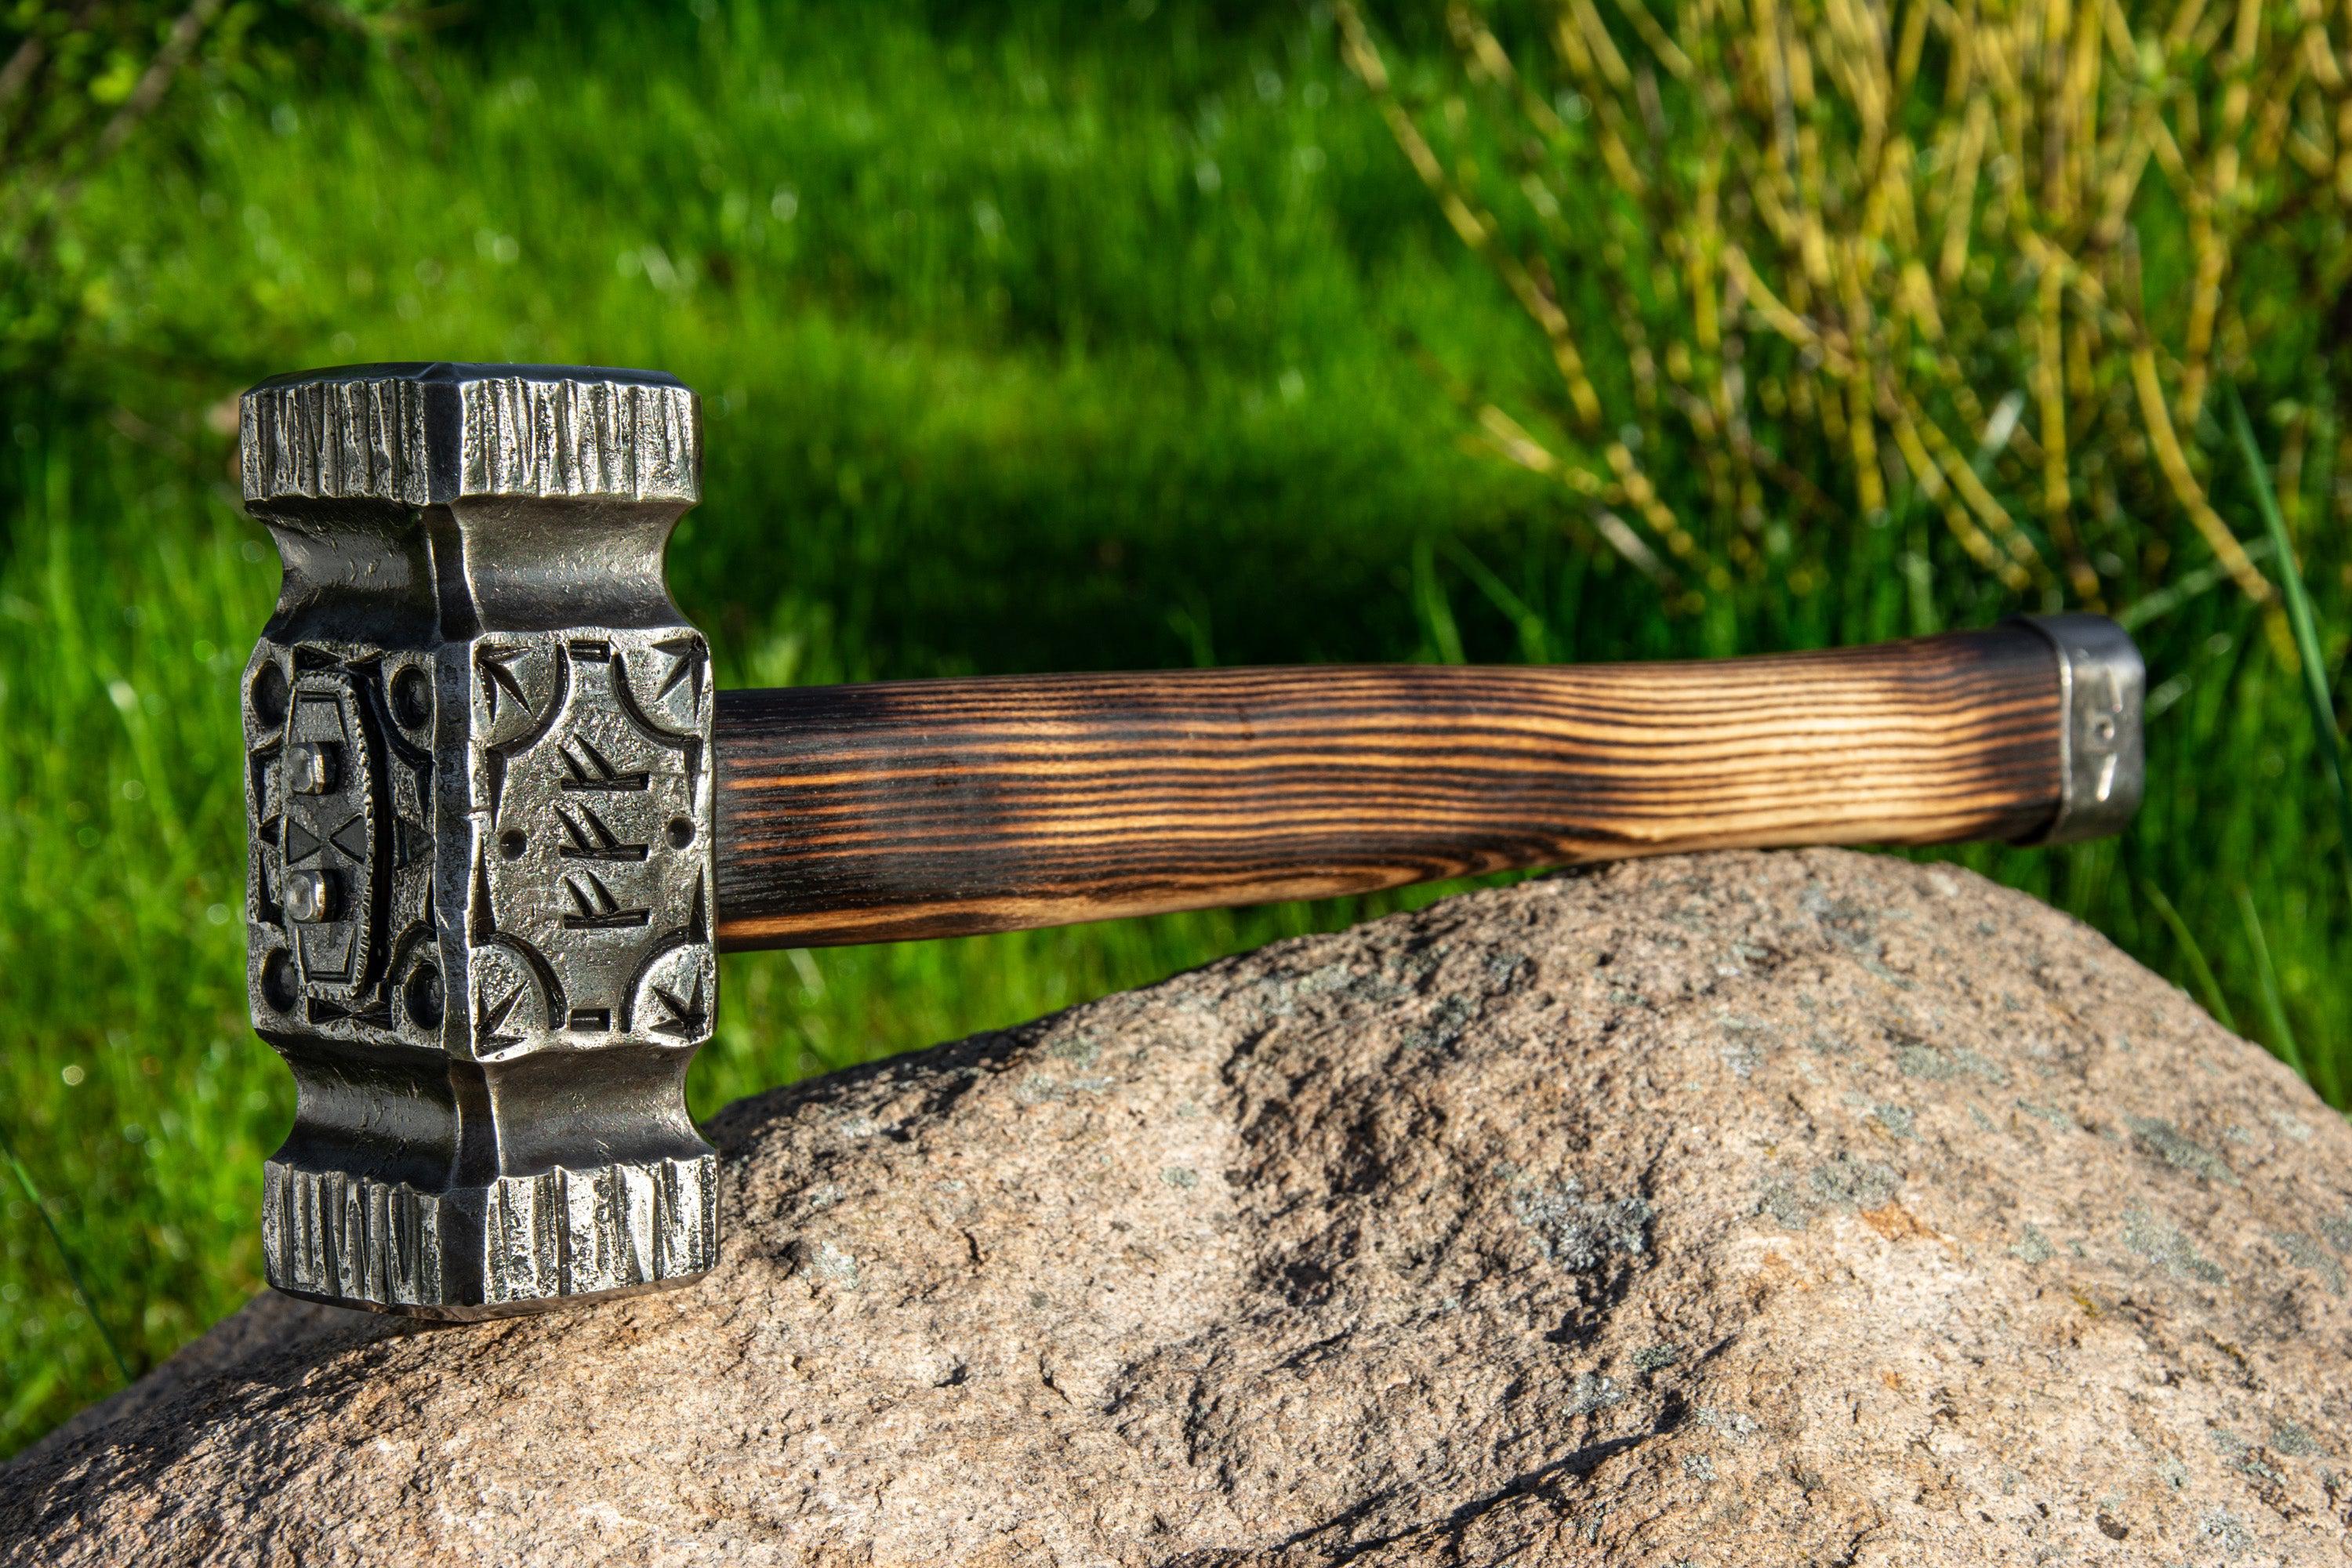 Hand-Forged Blacksmith Hammer "Zeus"